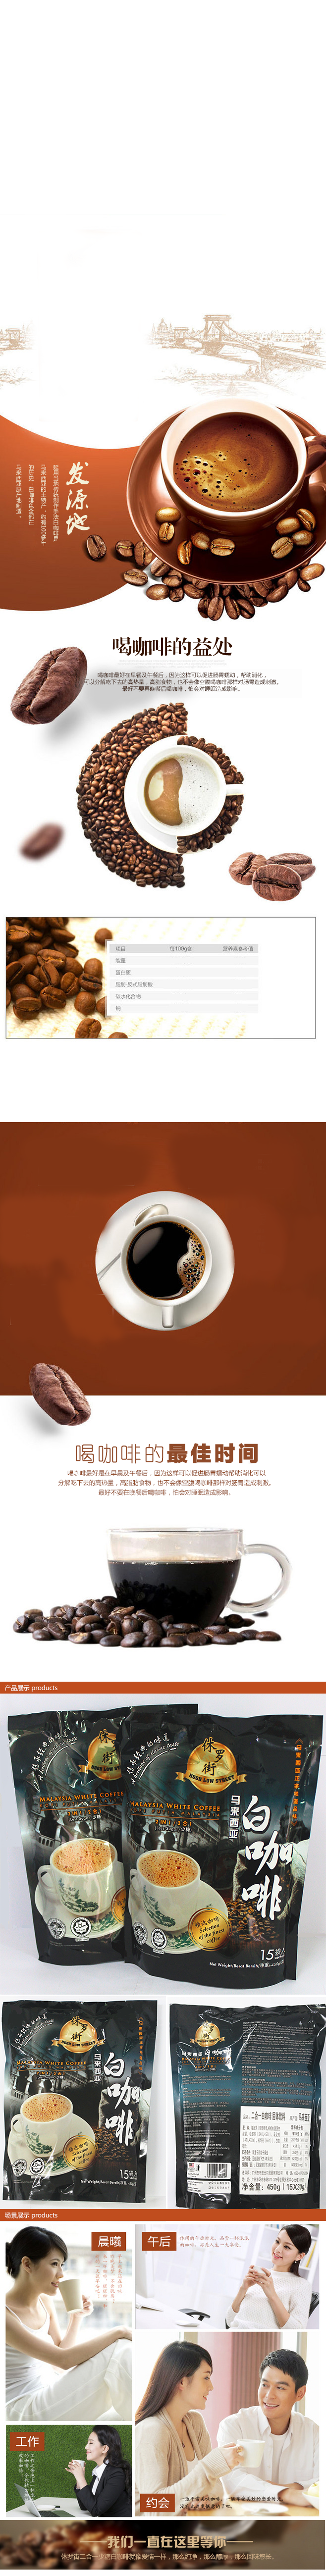 咖啡商品详情页模板图片